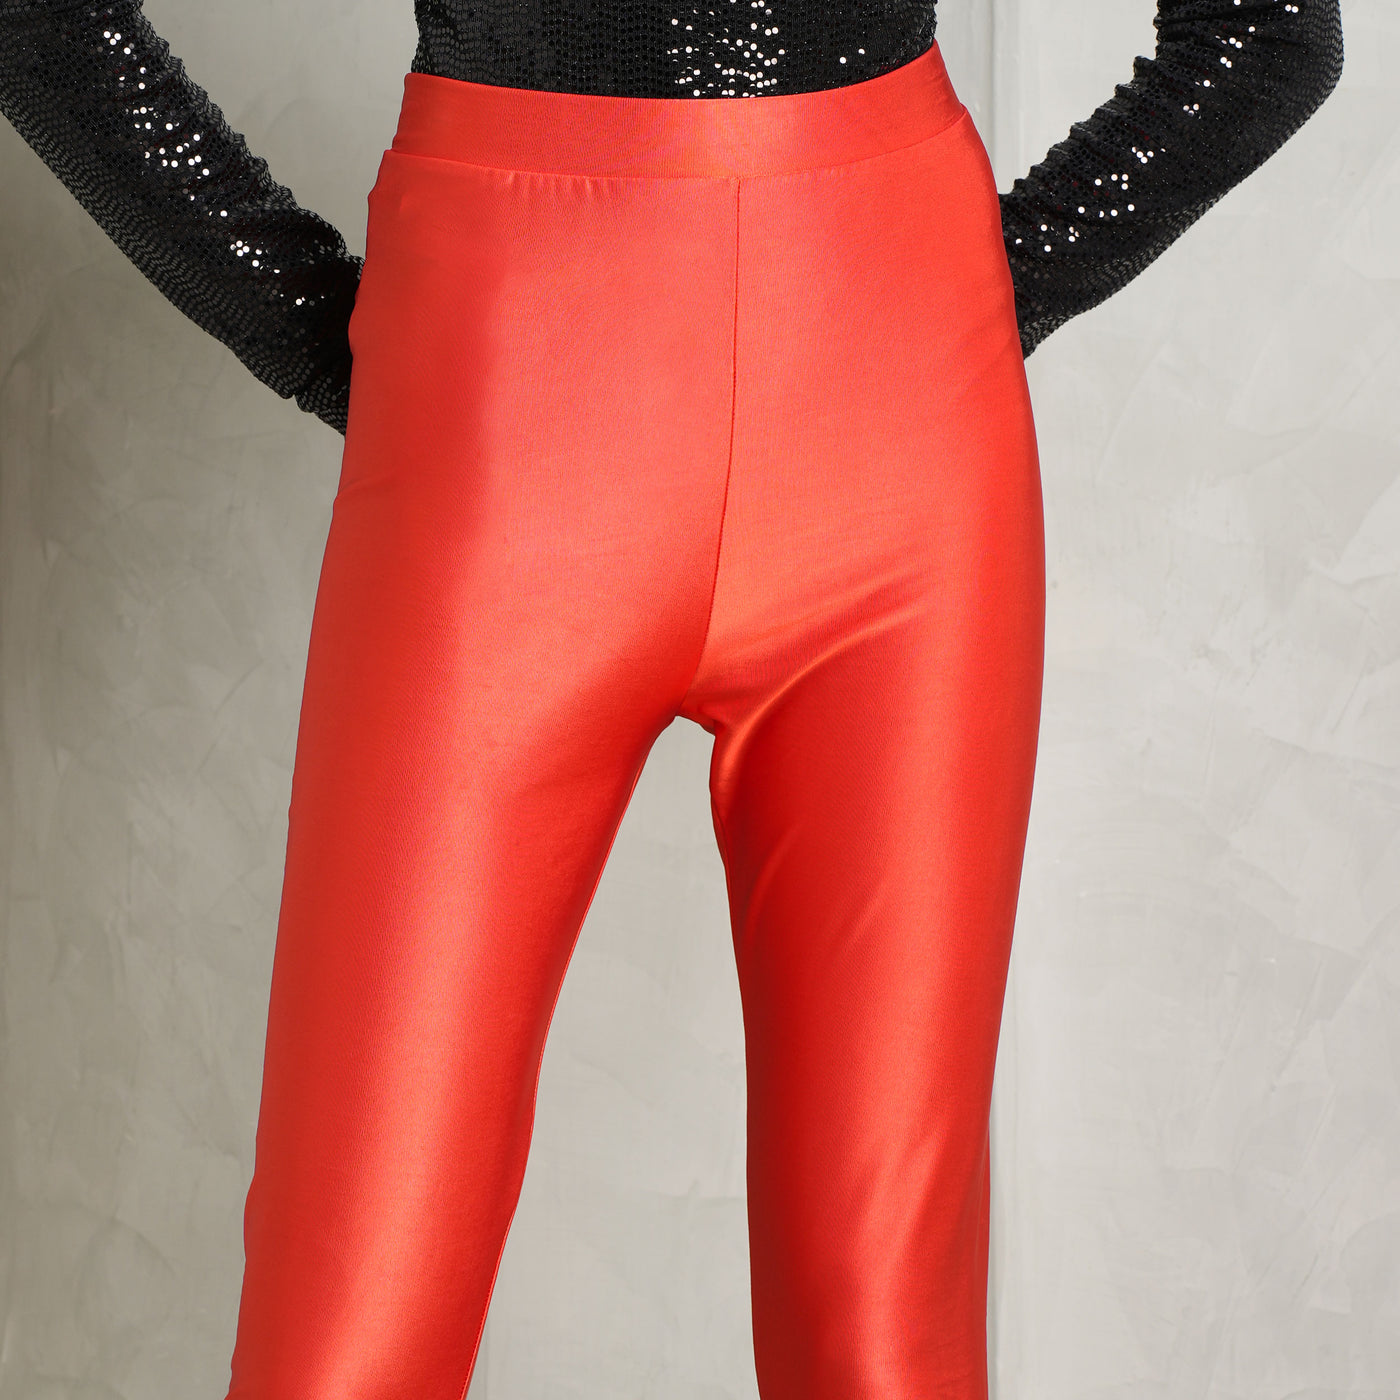 ALEXANDRE VAUTHIER magma red high waist leggings